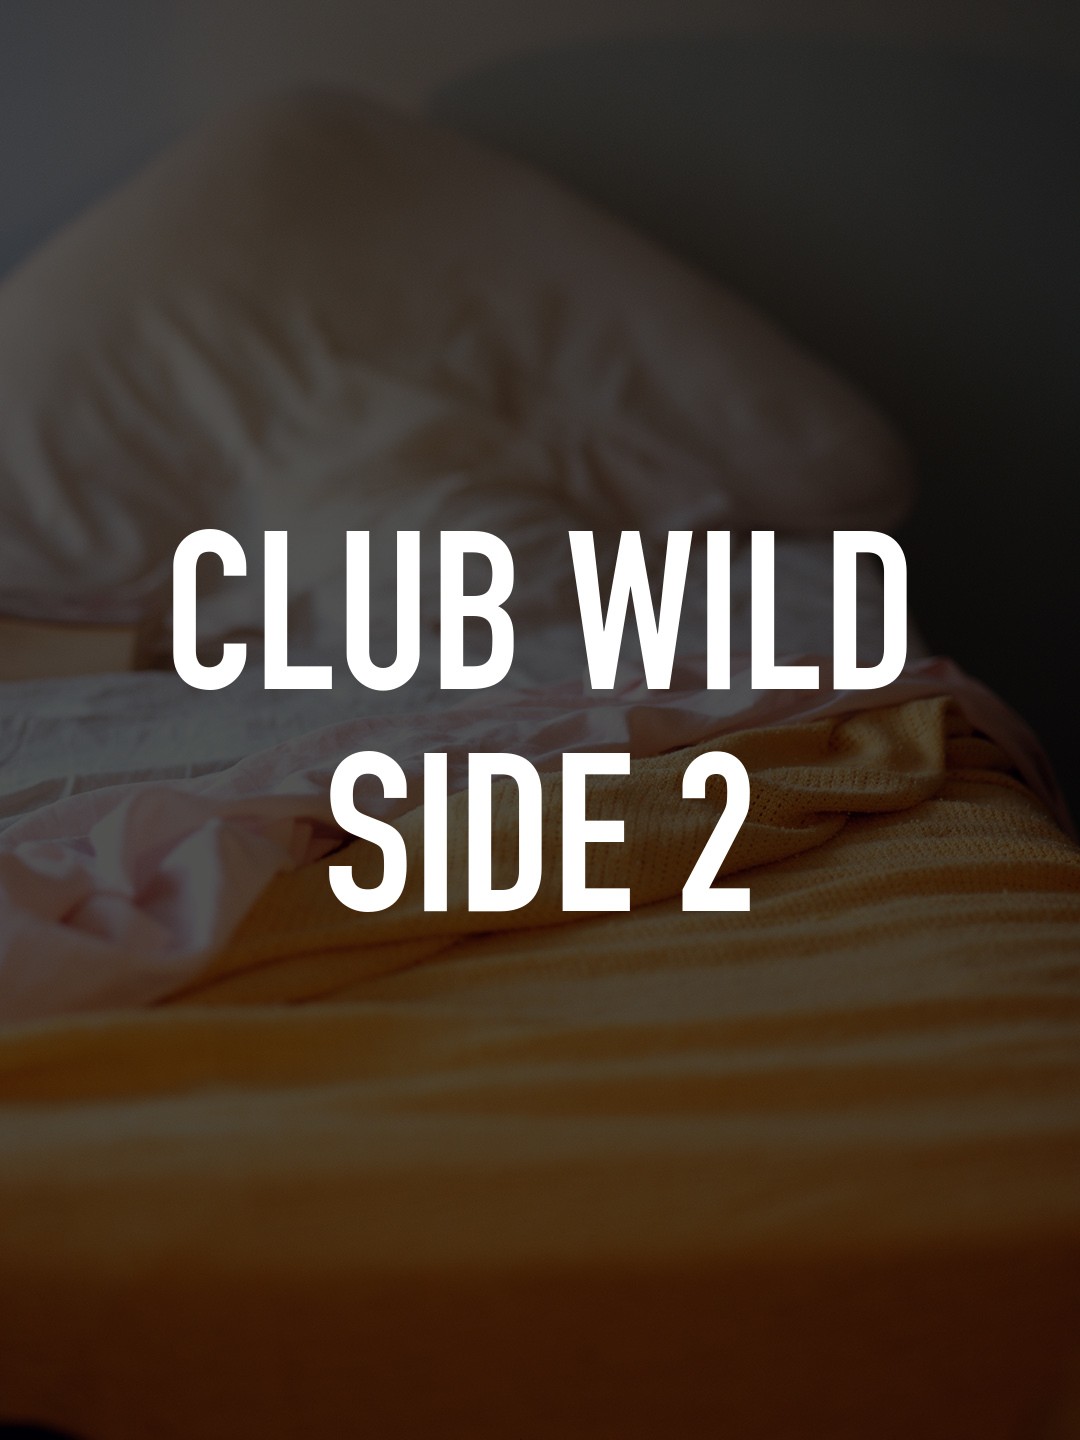 Club wild side 2